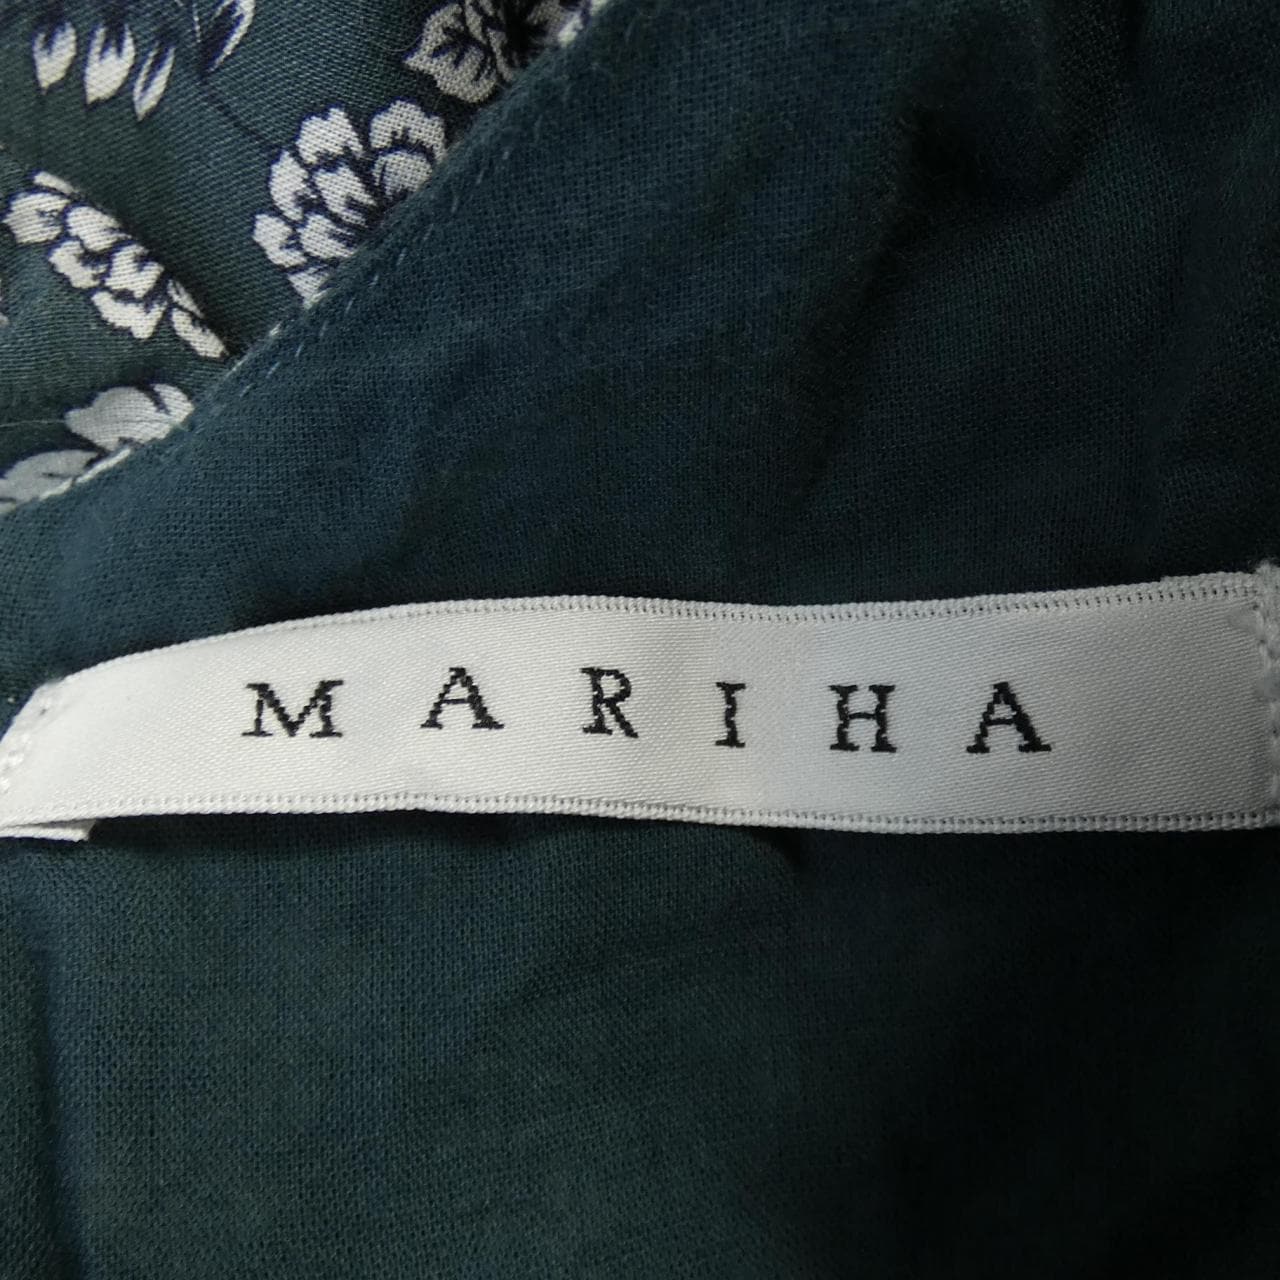 Mariha MARIHA dress